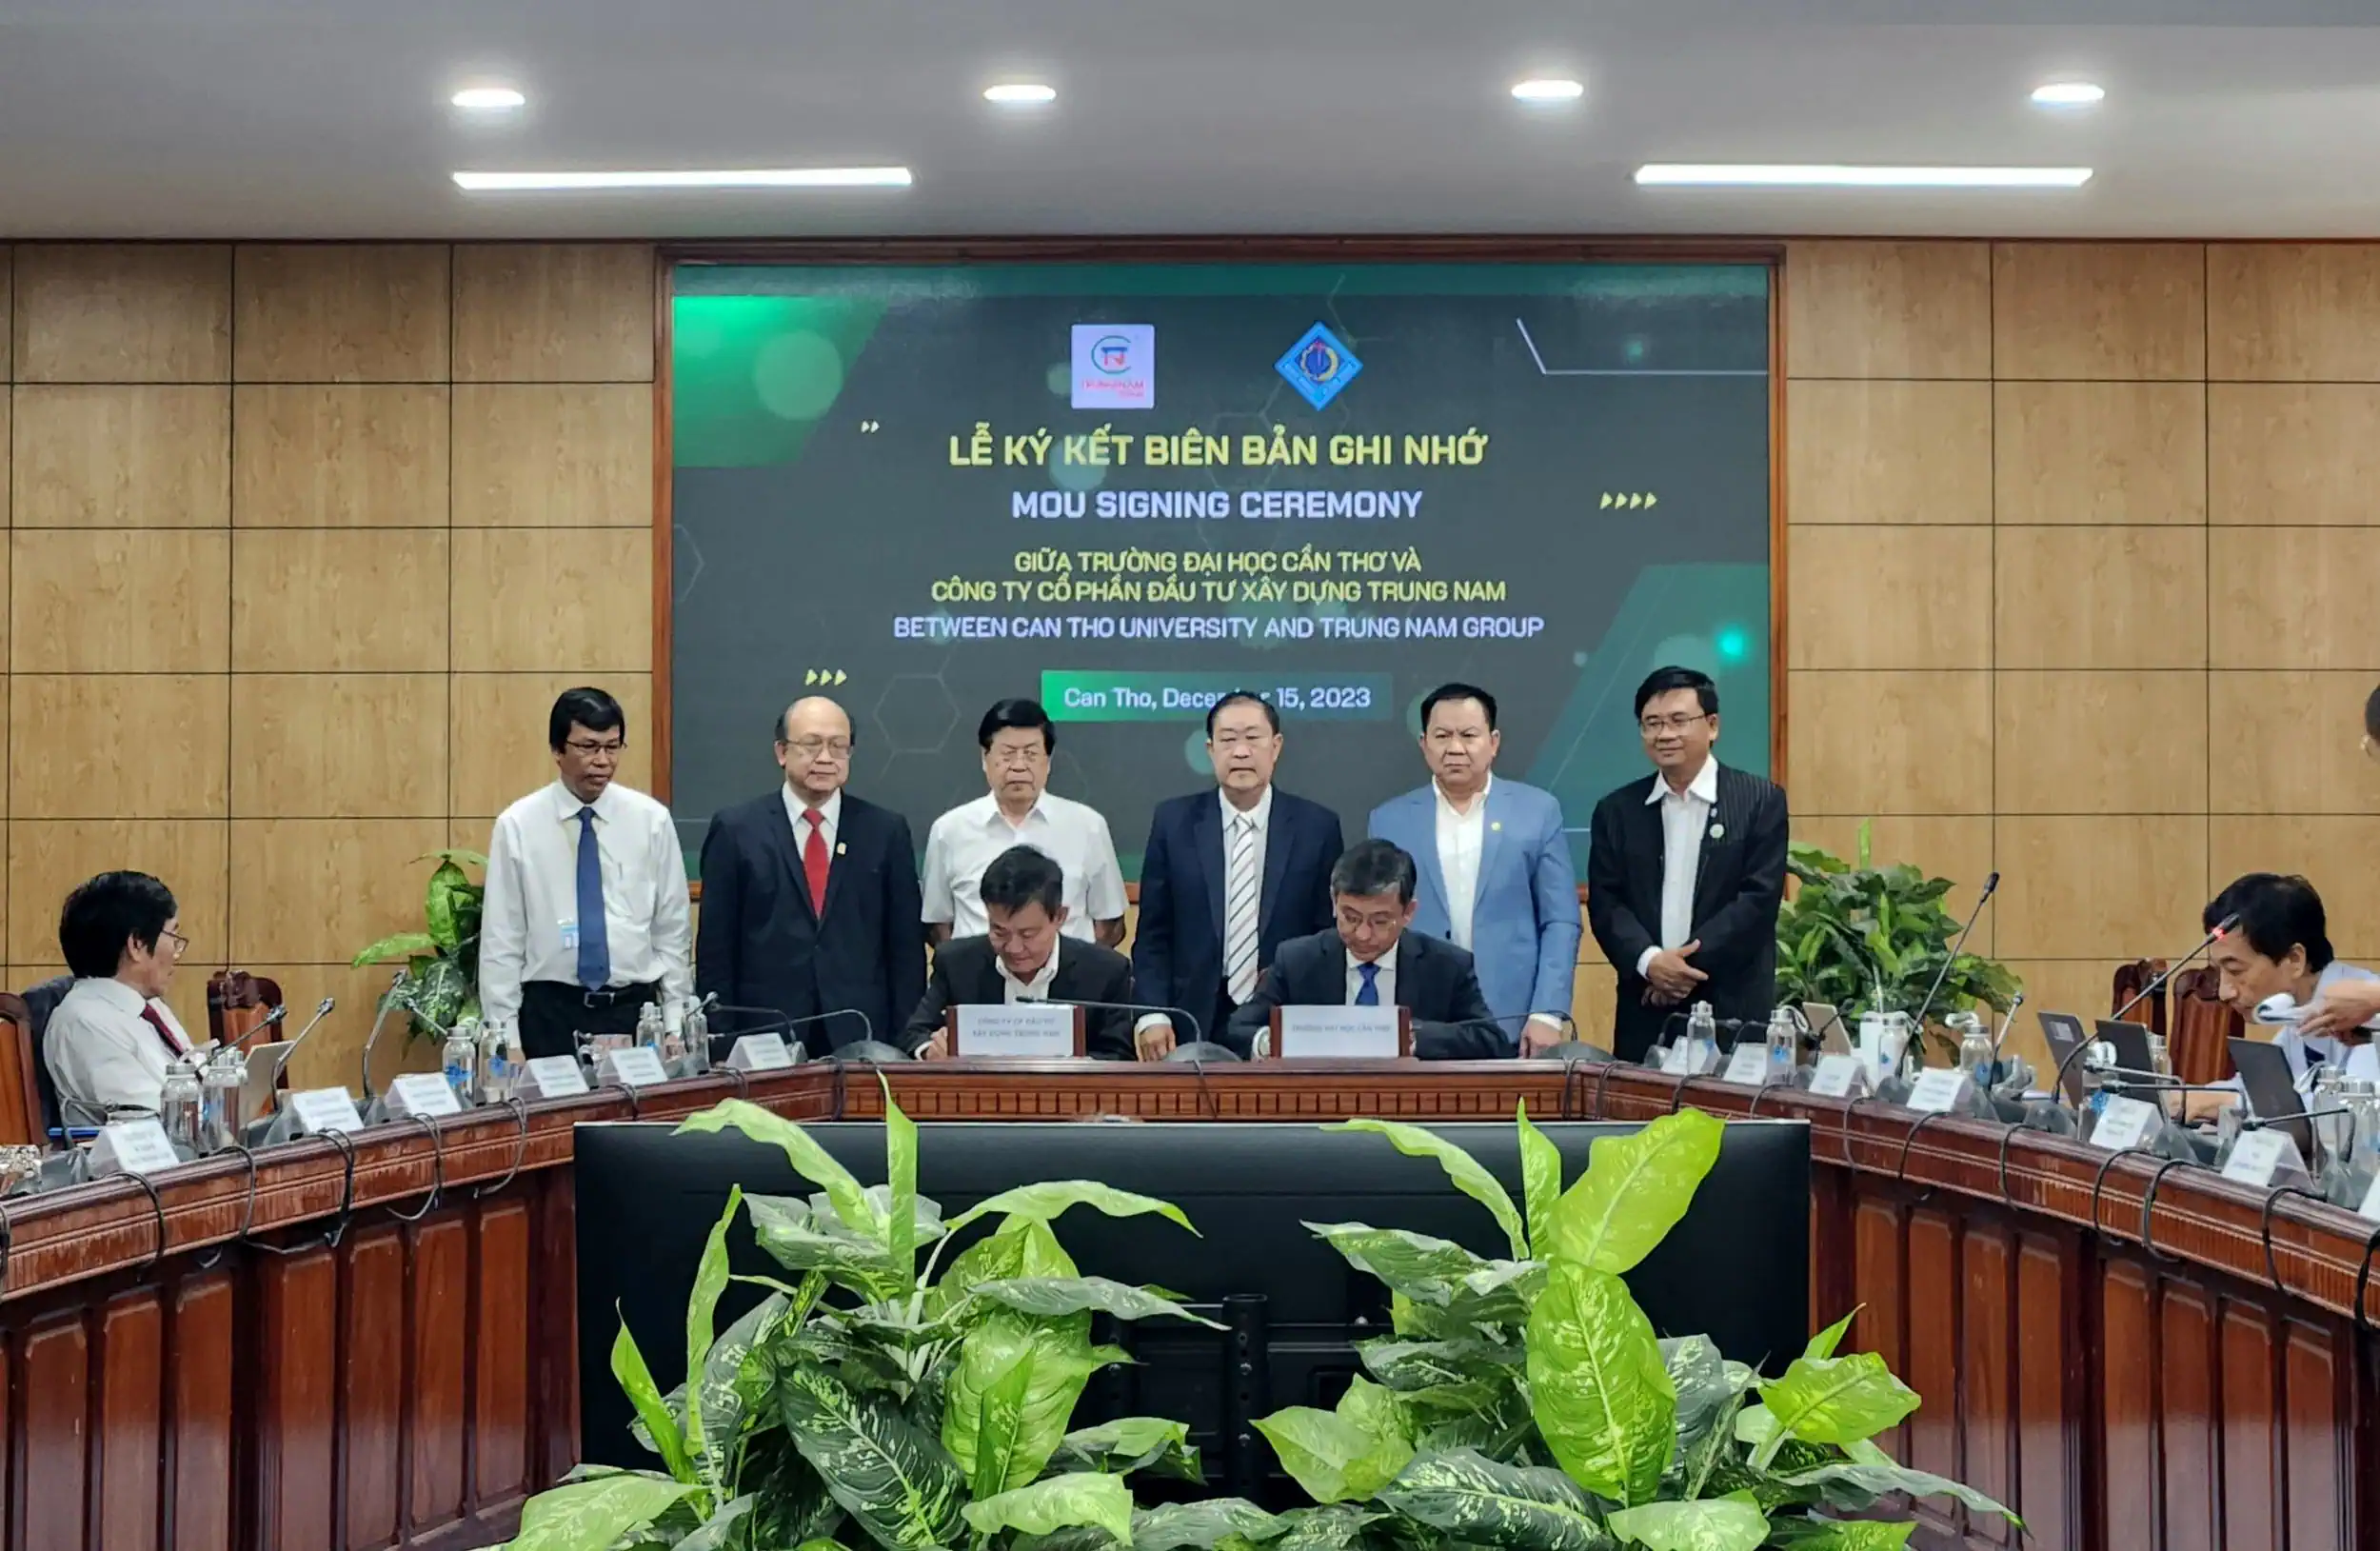 Ký kết hợp tác giữa Trường Đại học Cần Thơ và Công ty CP Đầu tư Xây dựng Trung Nam.